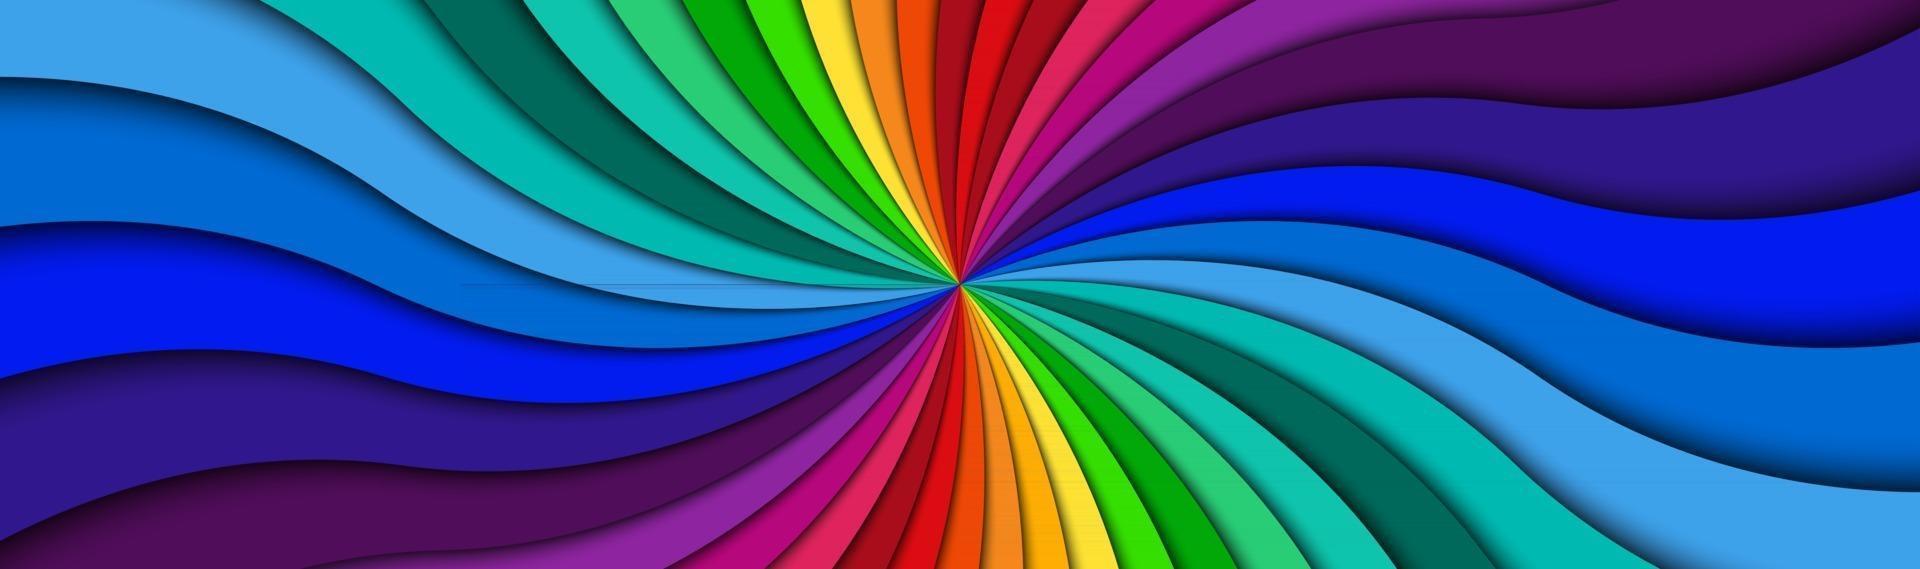 Colore intestazione a spirale luminoso colorato vorticoso modello radiale banner abstract illustrazione vettoriale